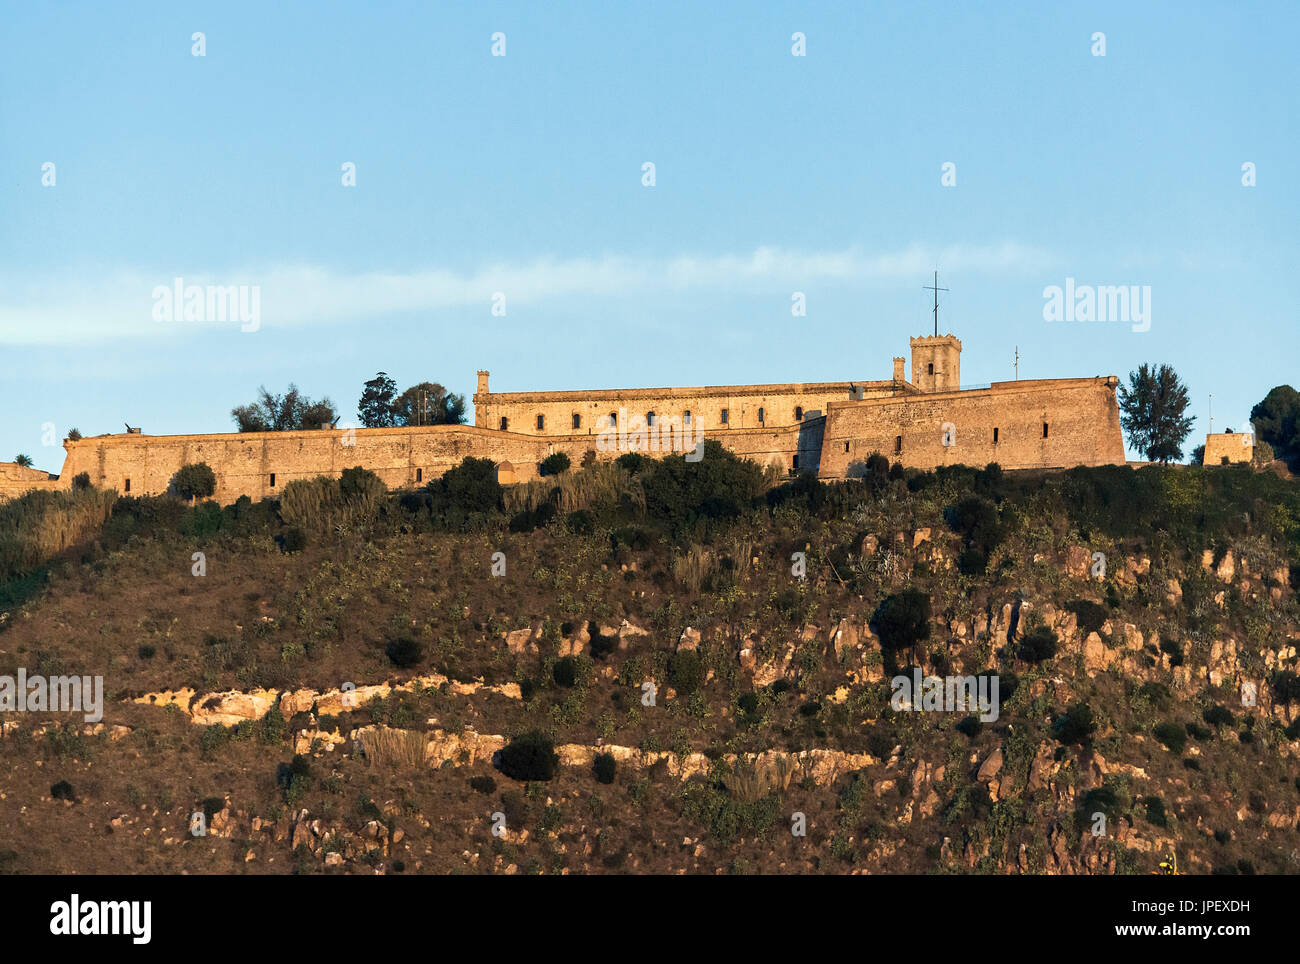 Château de Montjuic, Castillo de Montjuich, forteresse militaire, Montagne juive, Barcelone, Espagne Banque D'Images